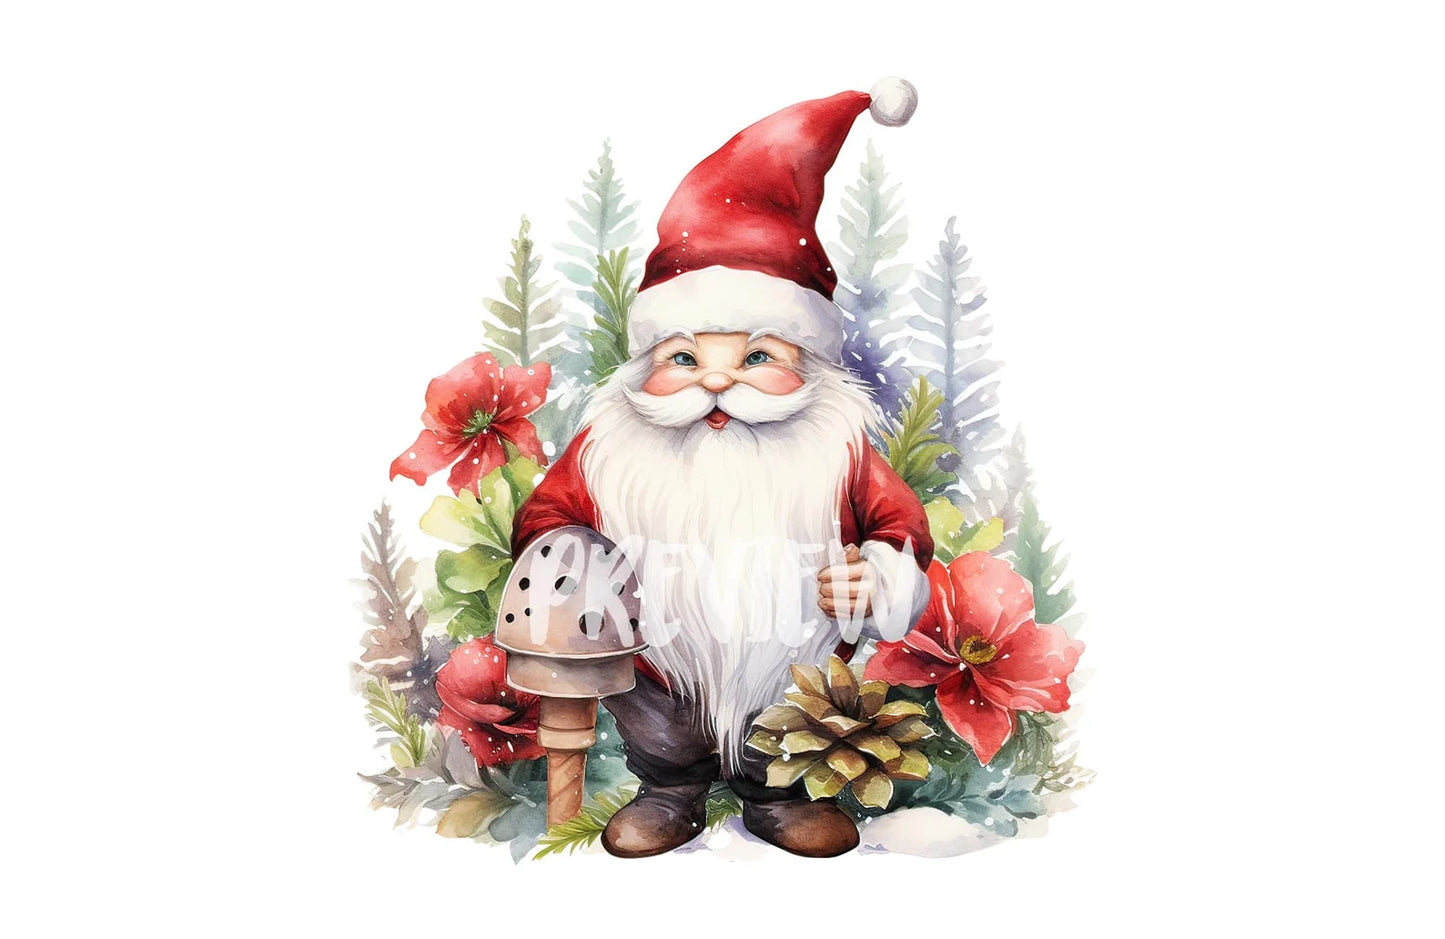 Watercolor Christmas Garden Gnome clipart